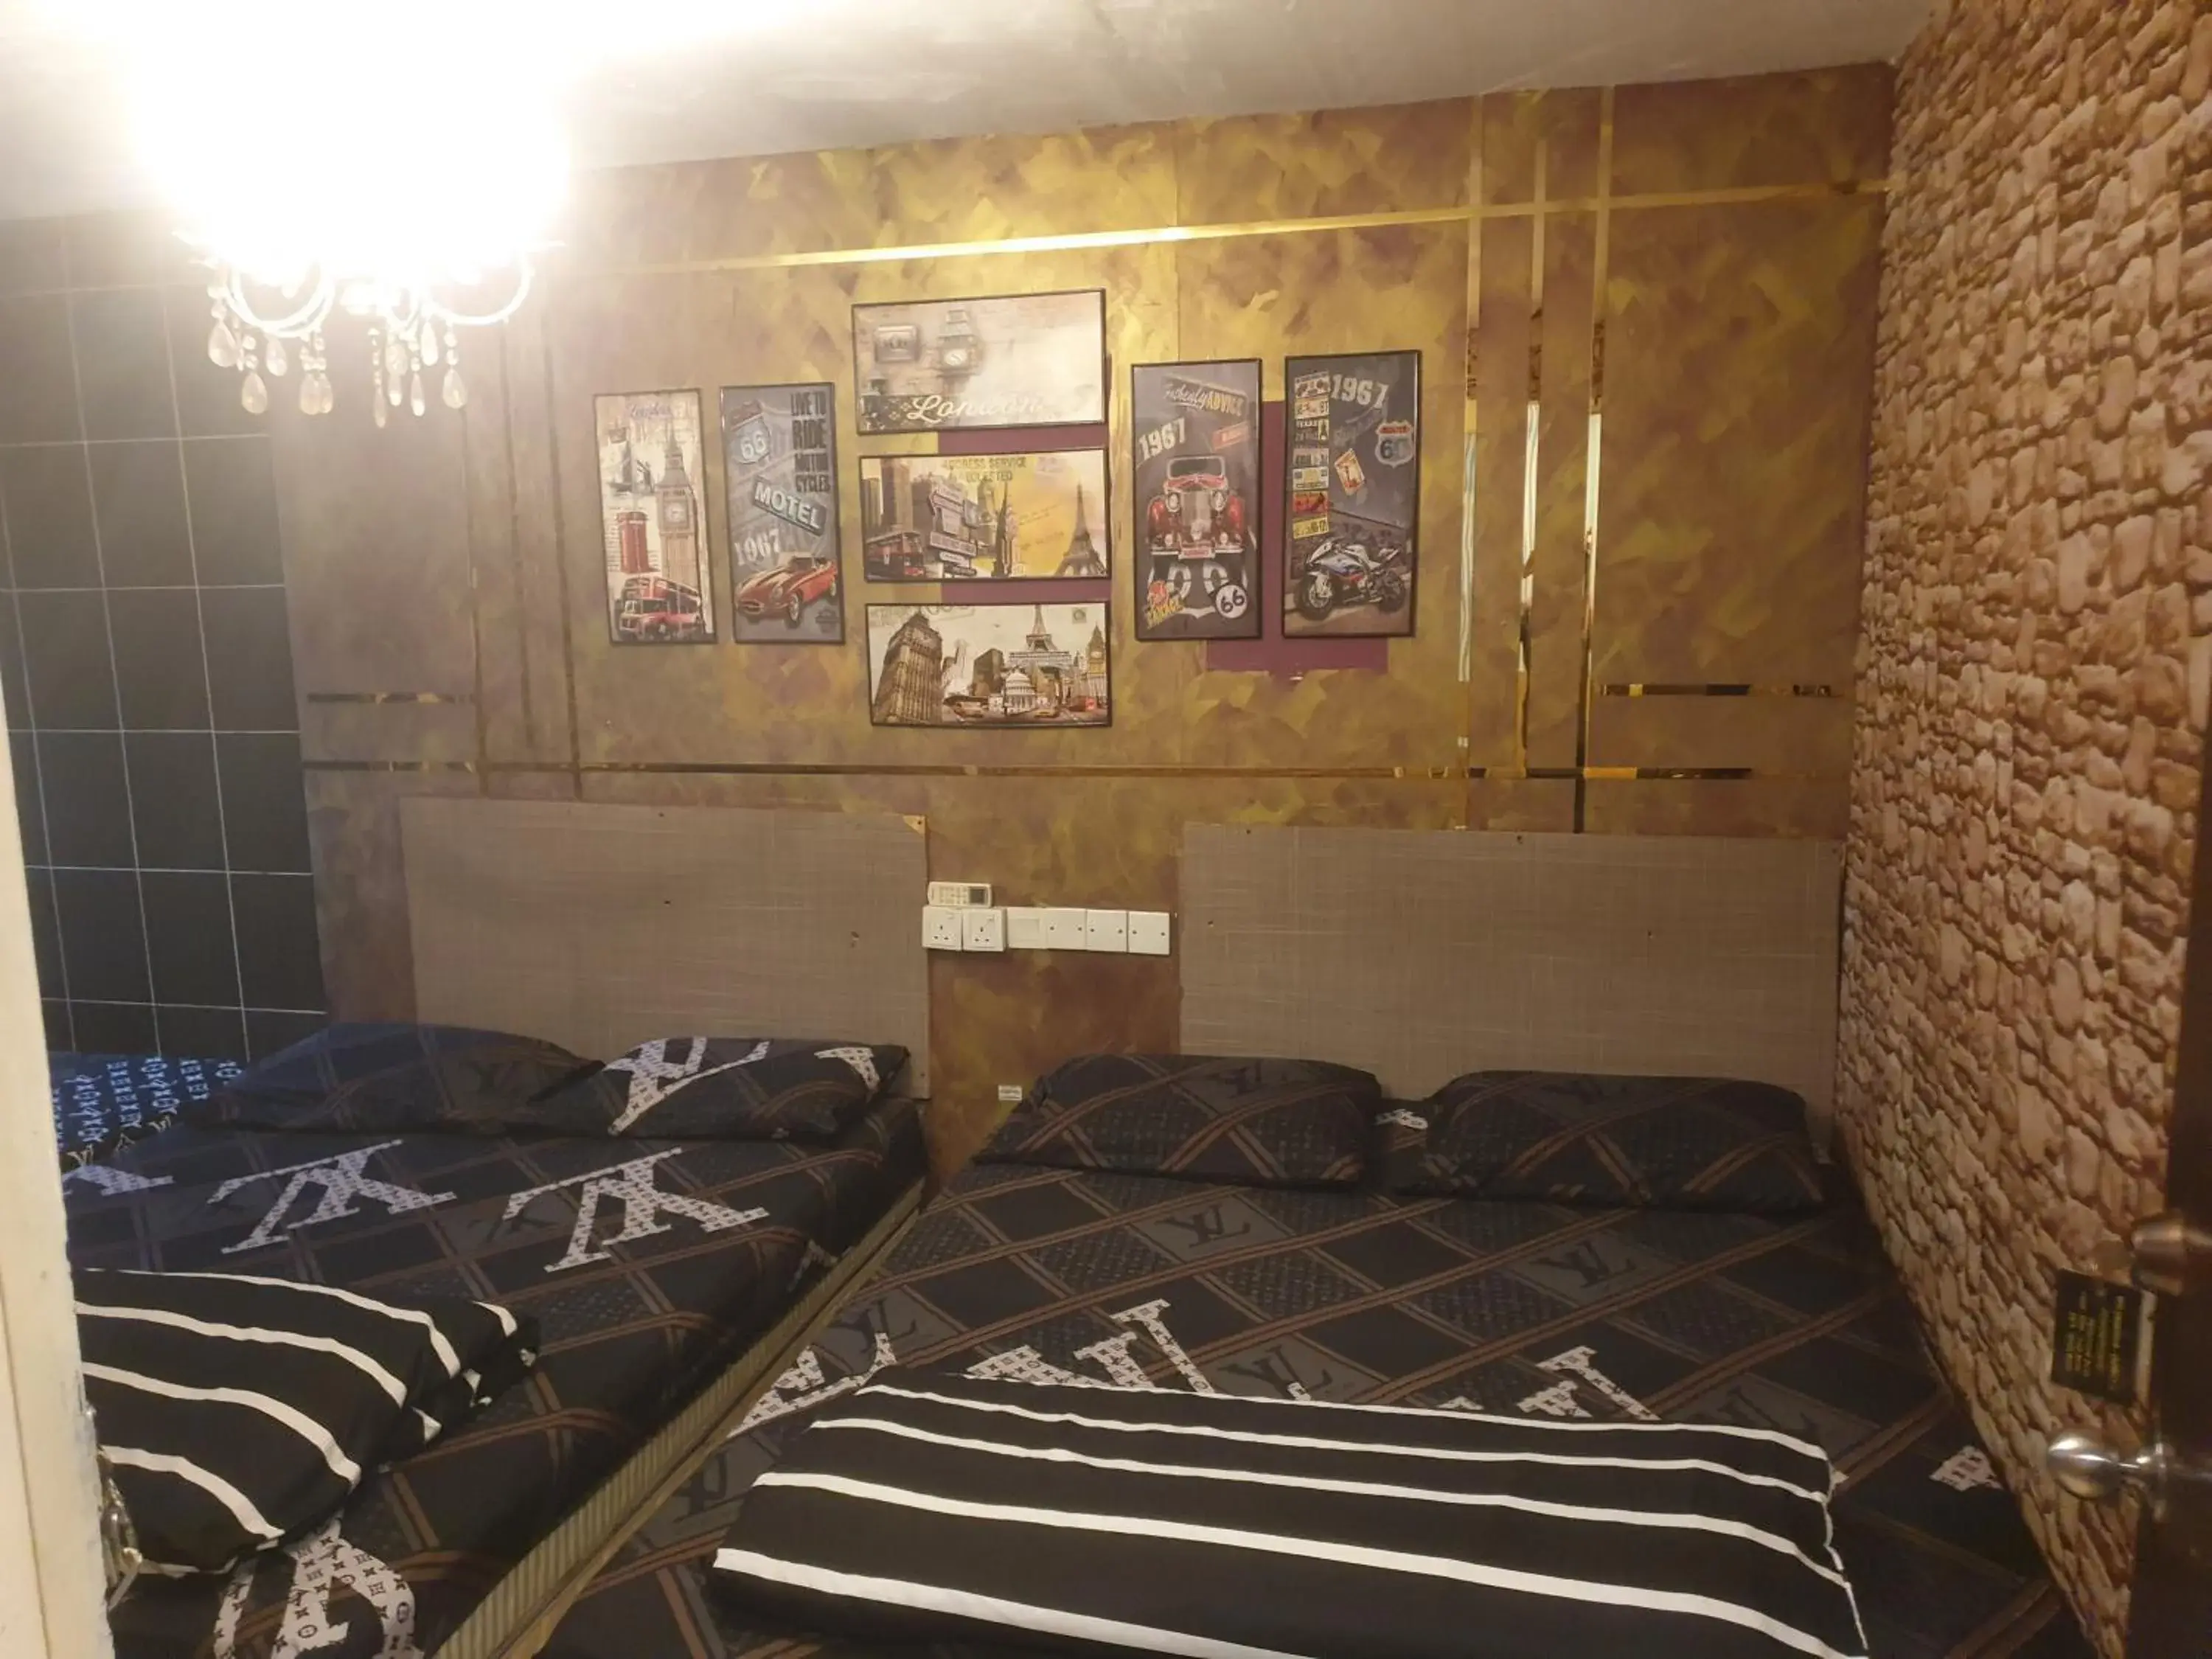 Bed in City Inn Hotel